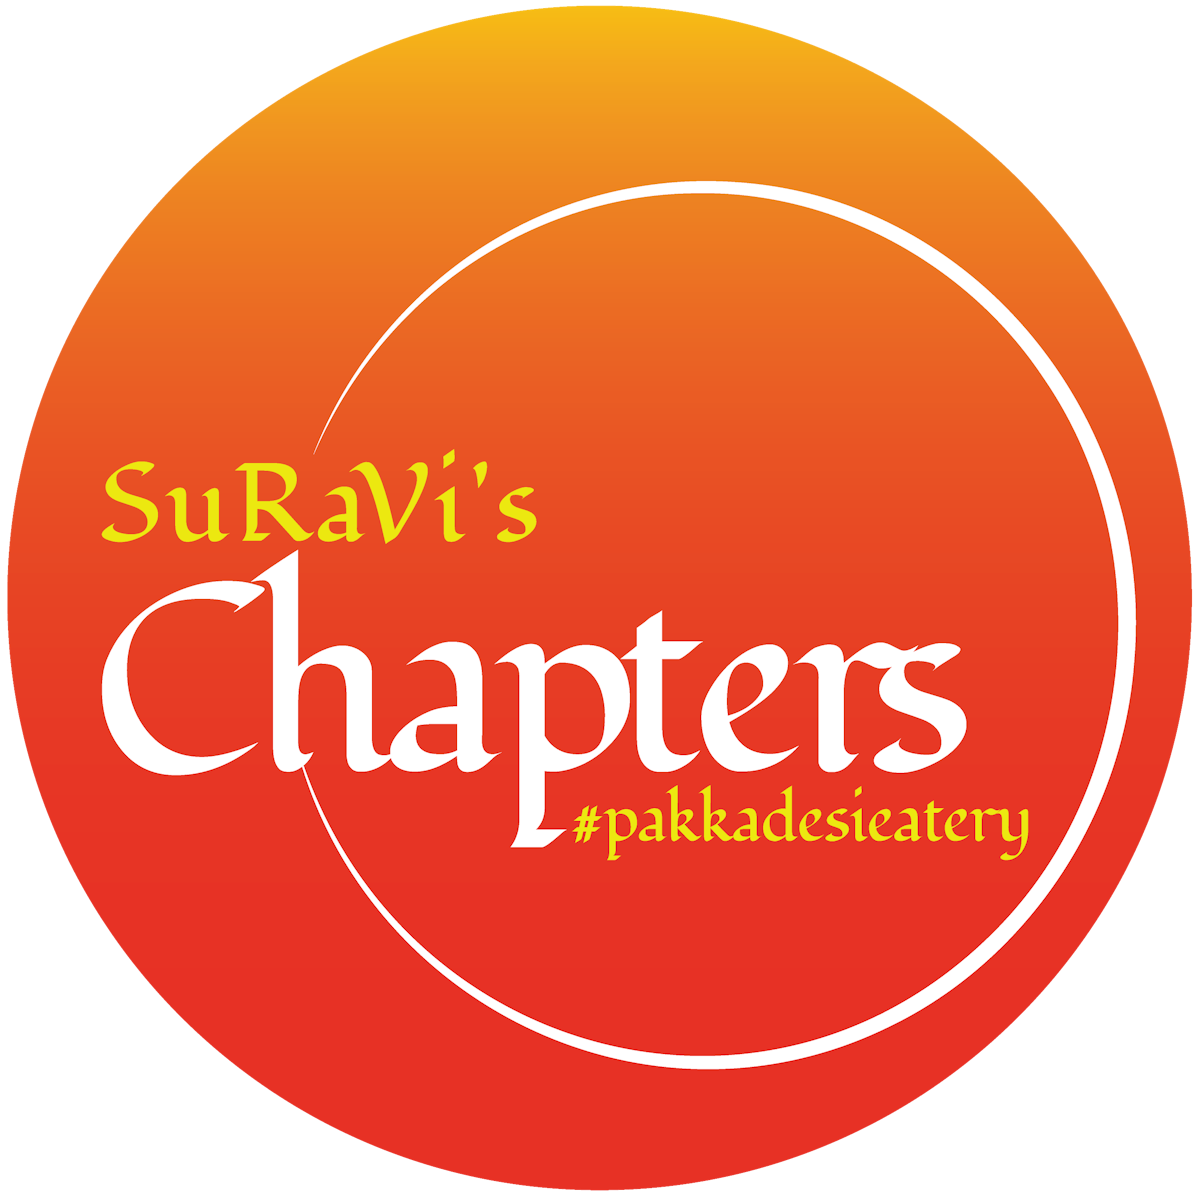 SuRaVi chapter logo